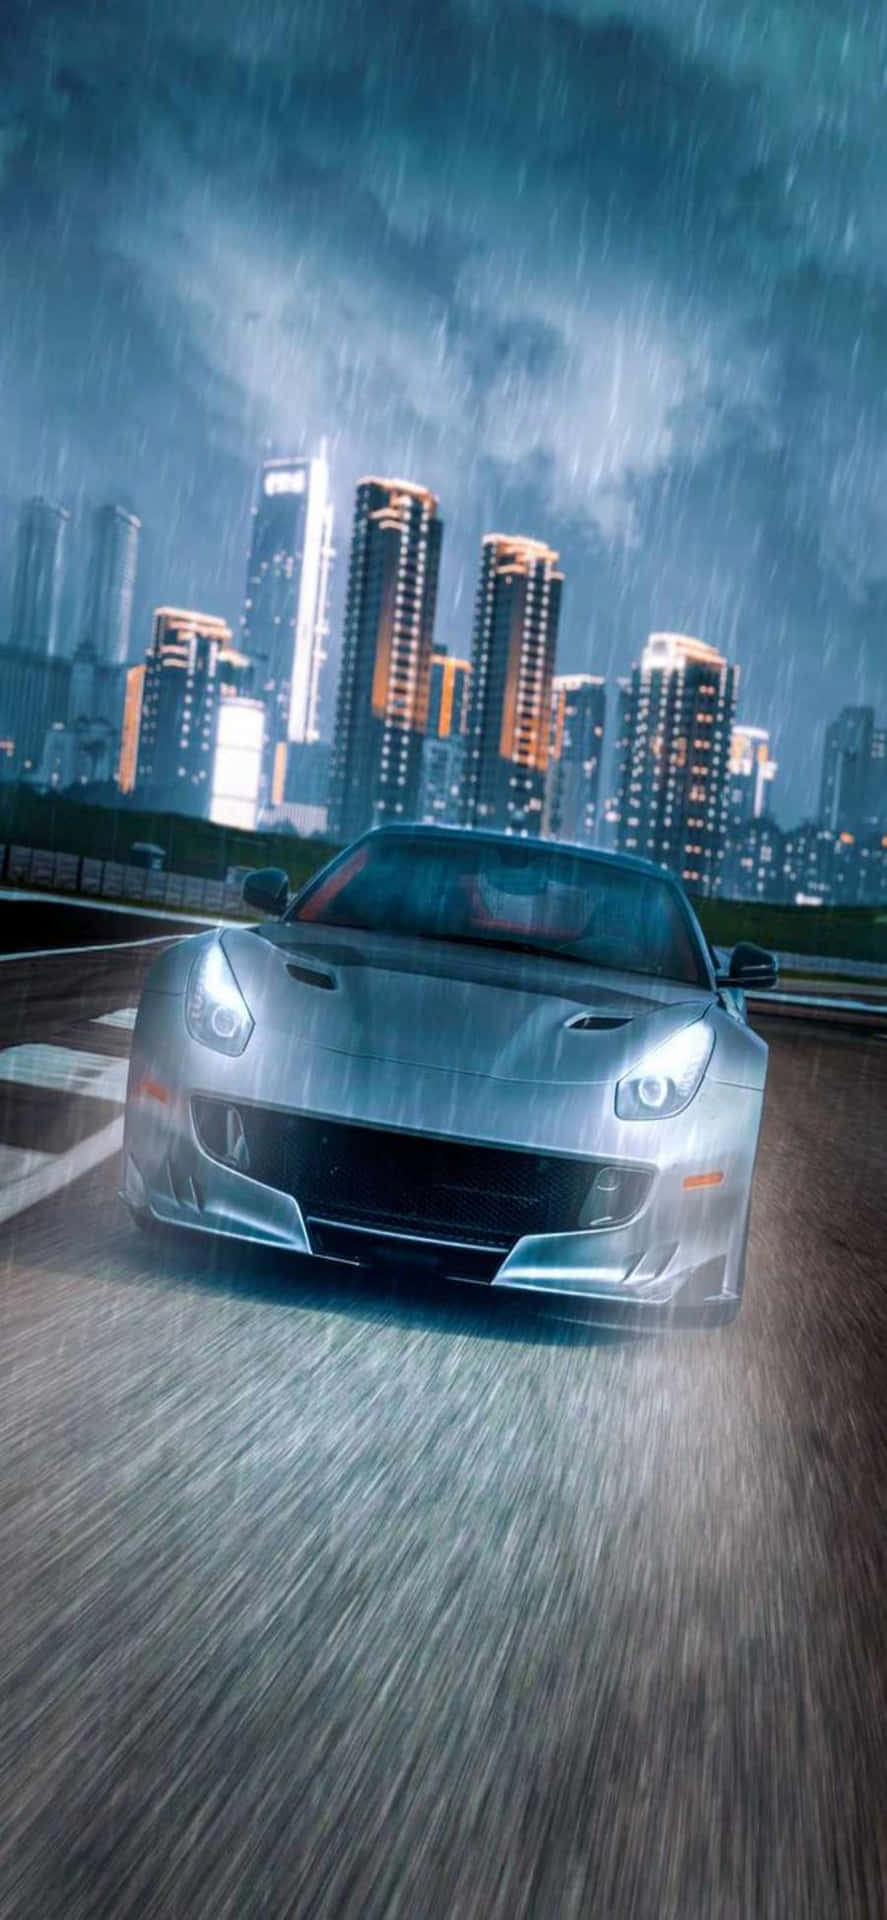 Iphonexs Max Ferrari Hintergrund Ferrari Im Regen Bei Nacht